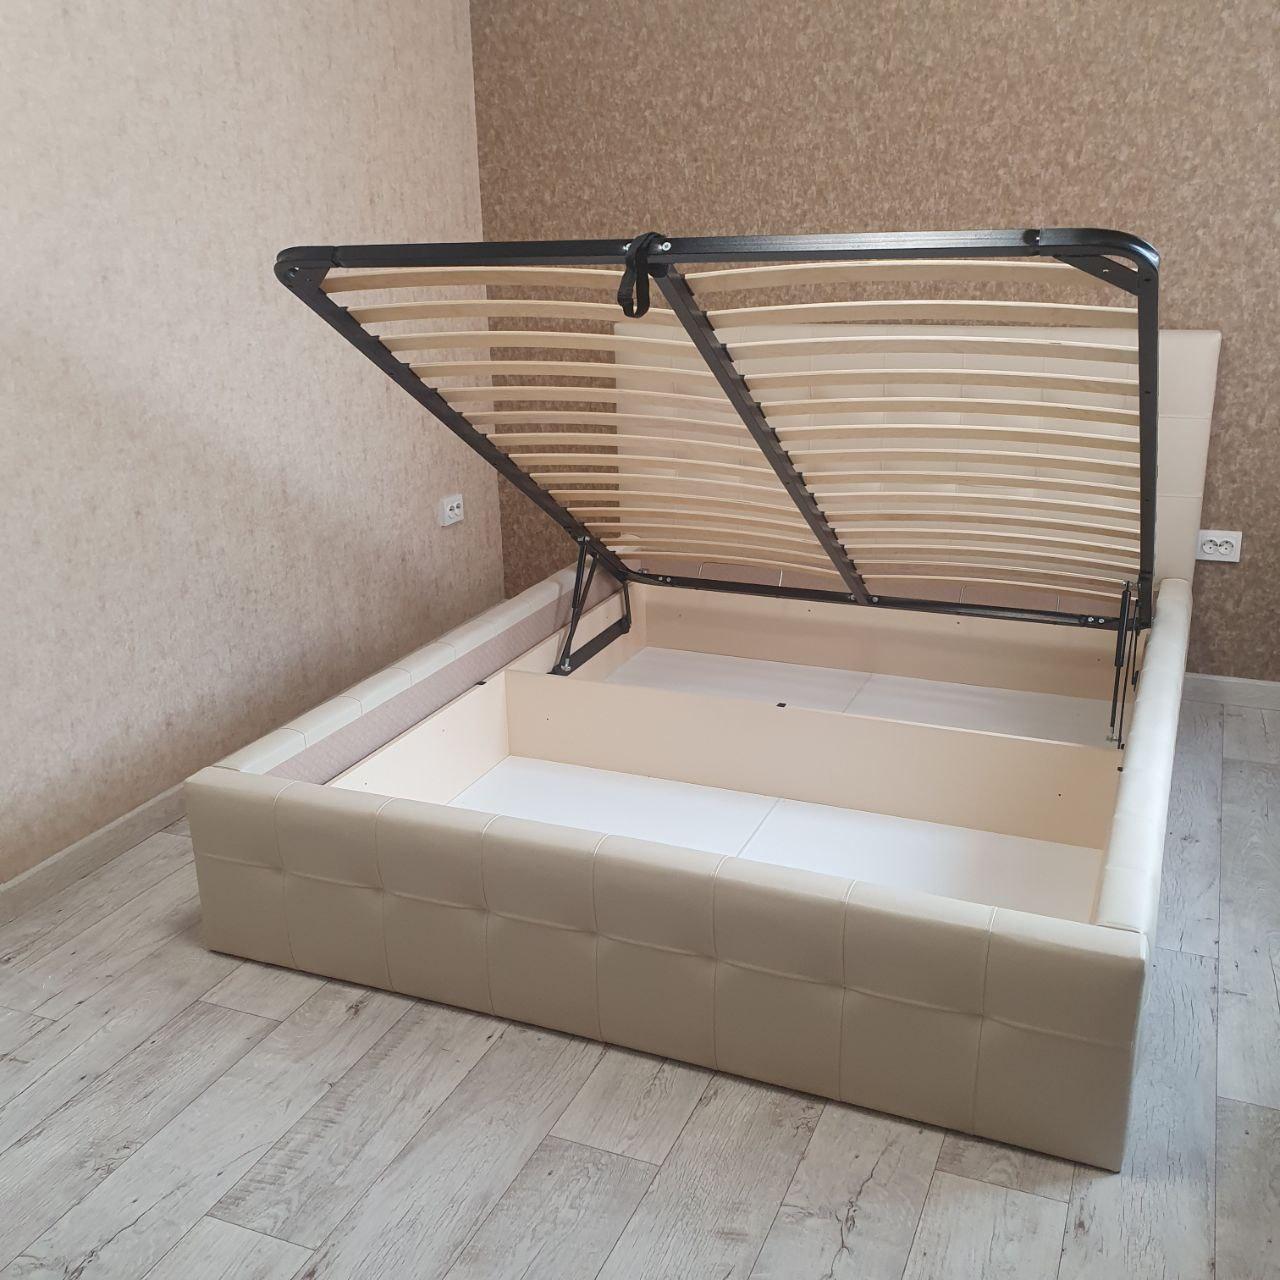 Полутораспальная кровать "Bella" 120 х 200 с подъемным механизмом цвет sancho 2202